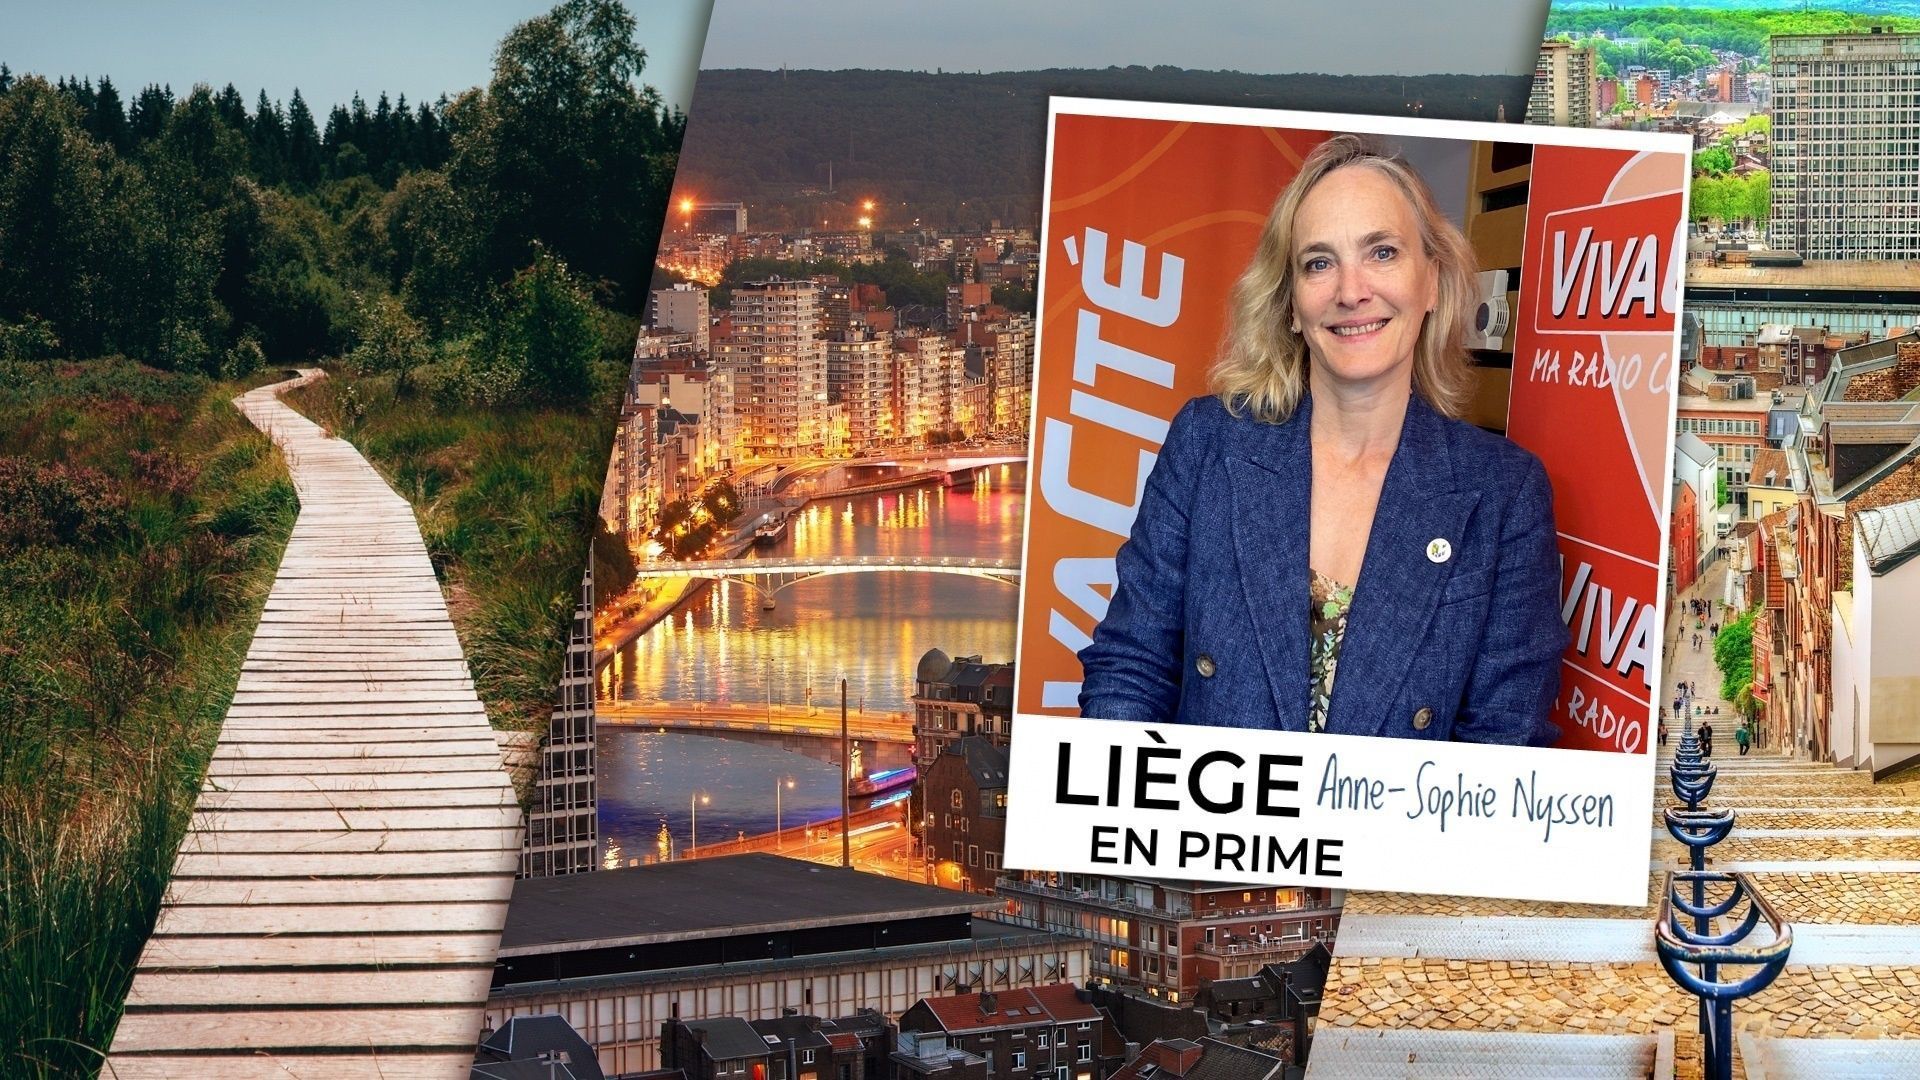 Anne-Sophie Nyssen, futuro decano, descrive in “Liège en Prime” il suo concetto di governance delle donne